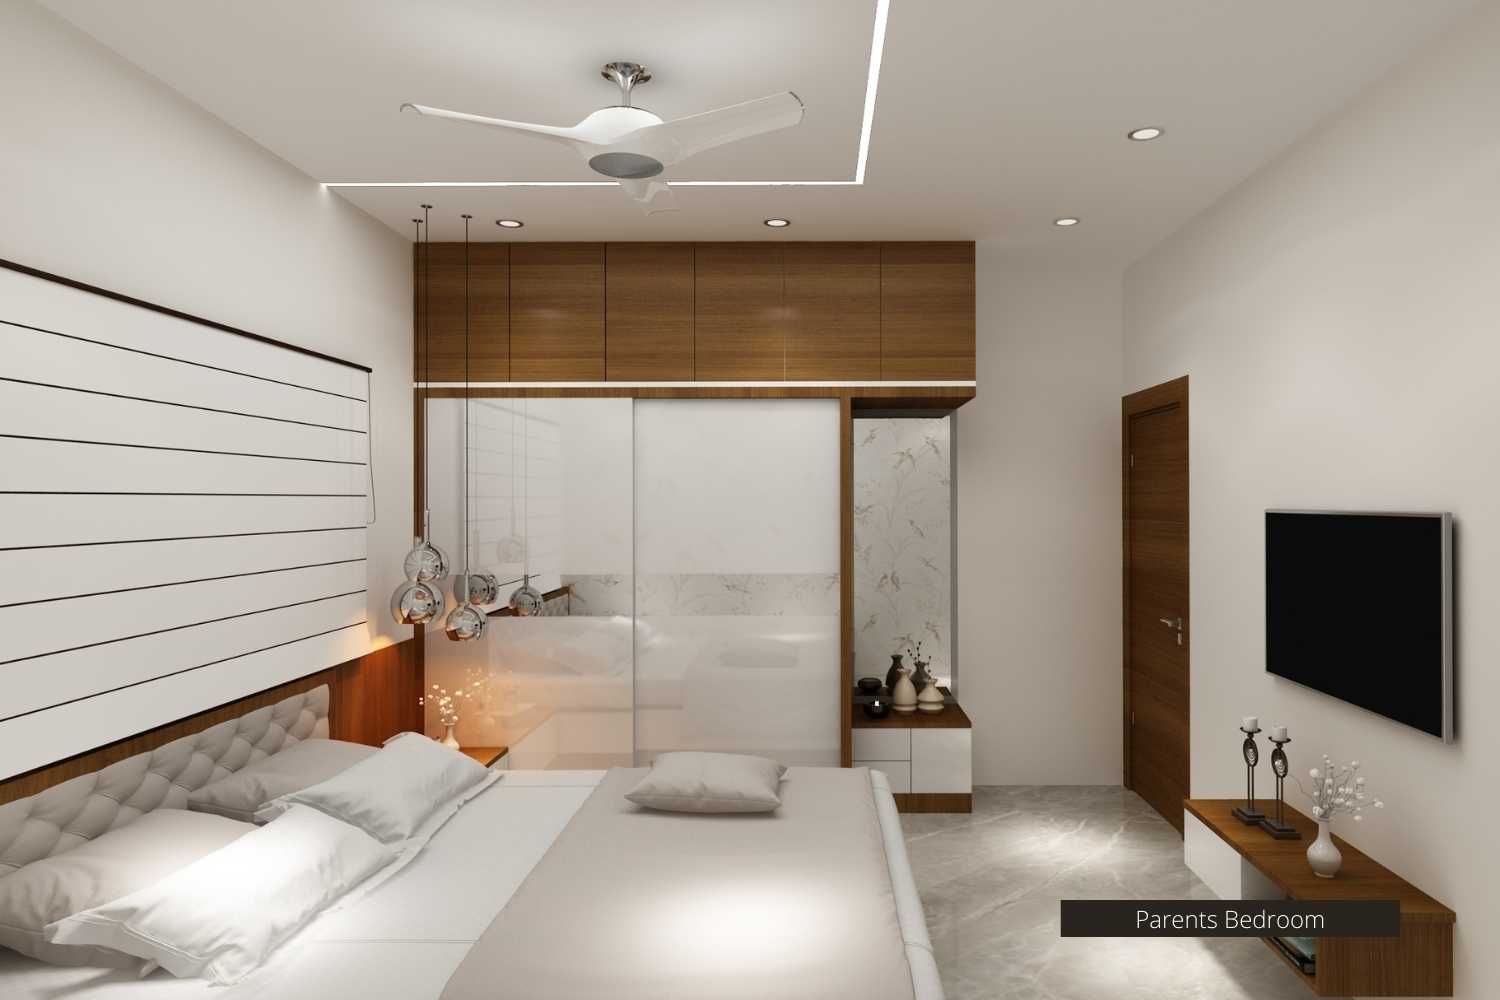 3bhk apartment interior design